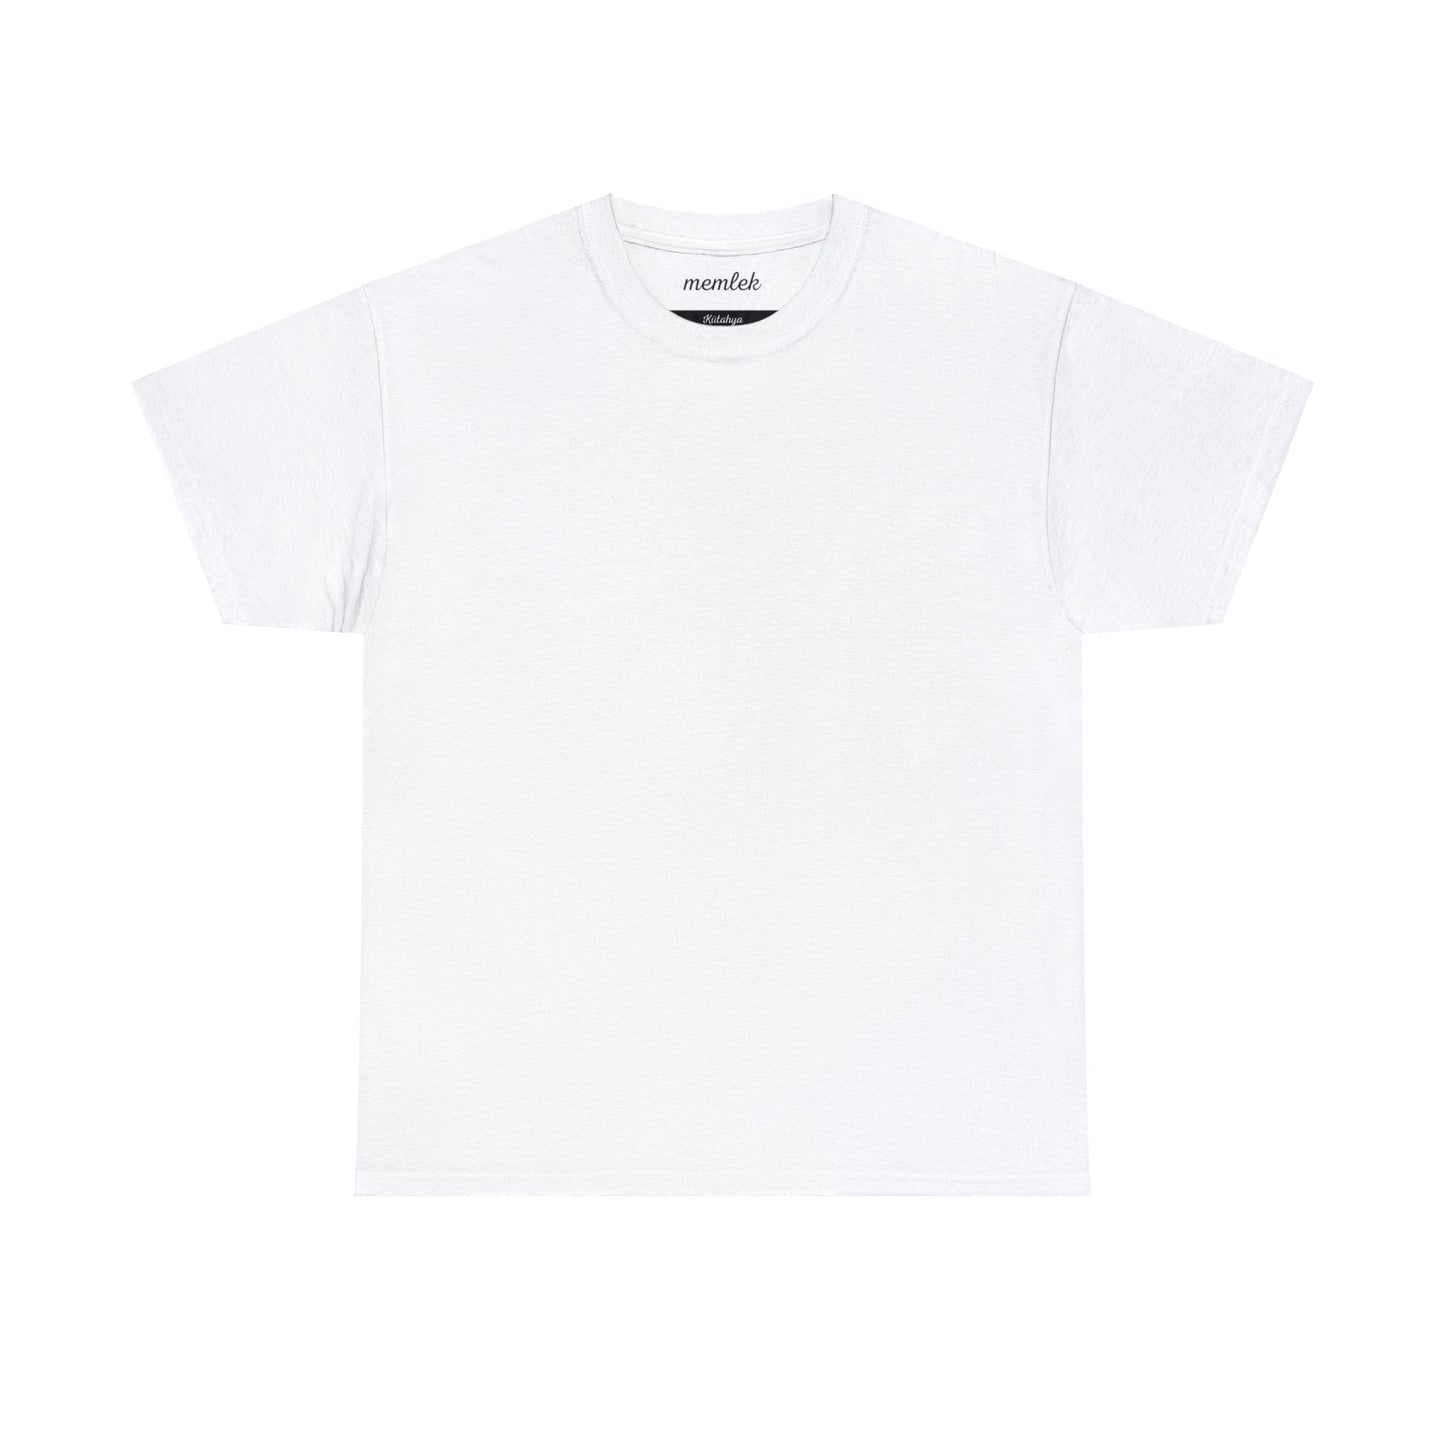 Kurt - 43 Kütahya - T-Shirt - Back Print - Black/White